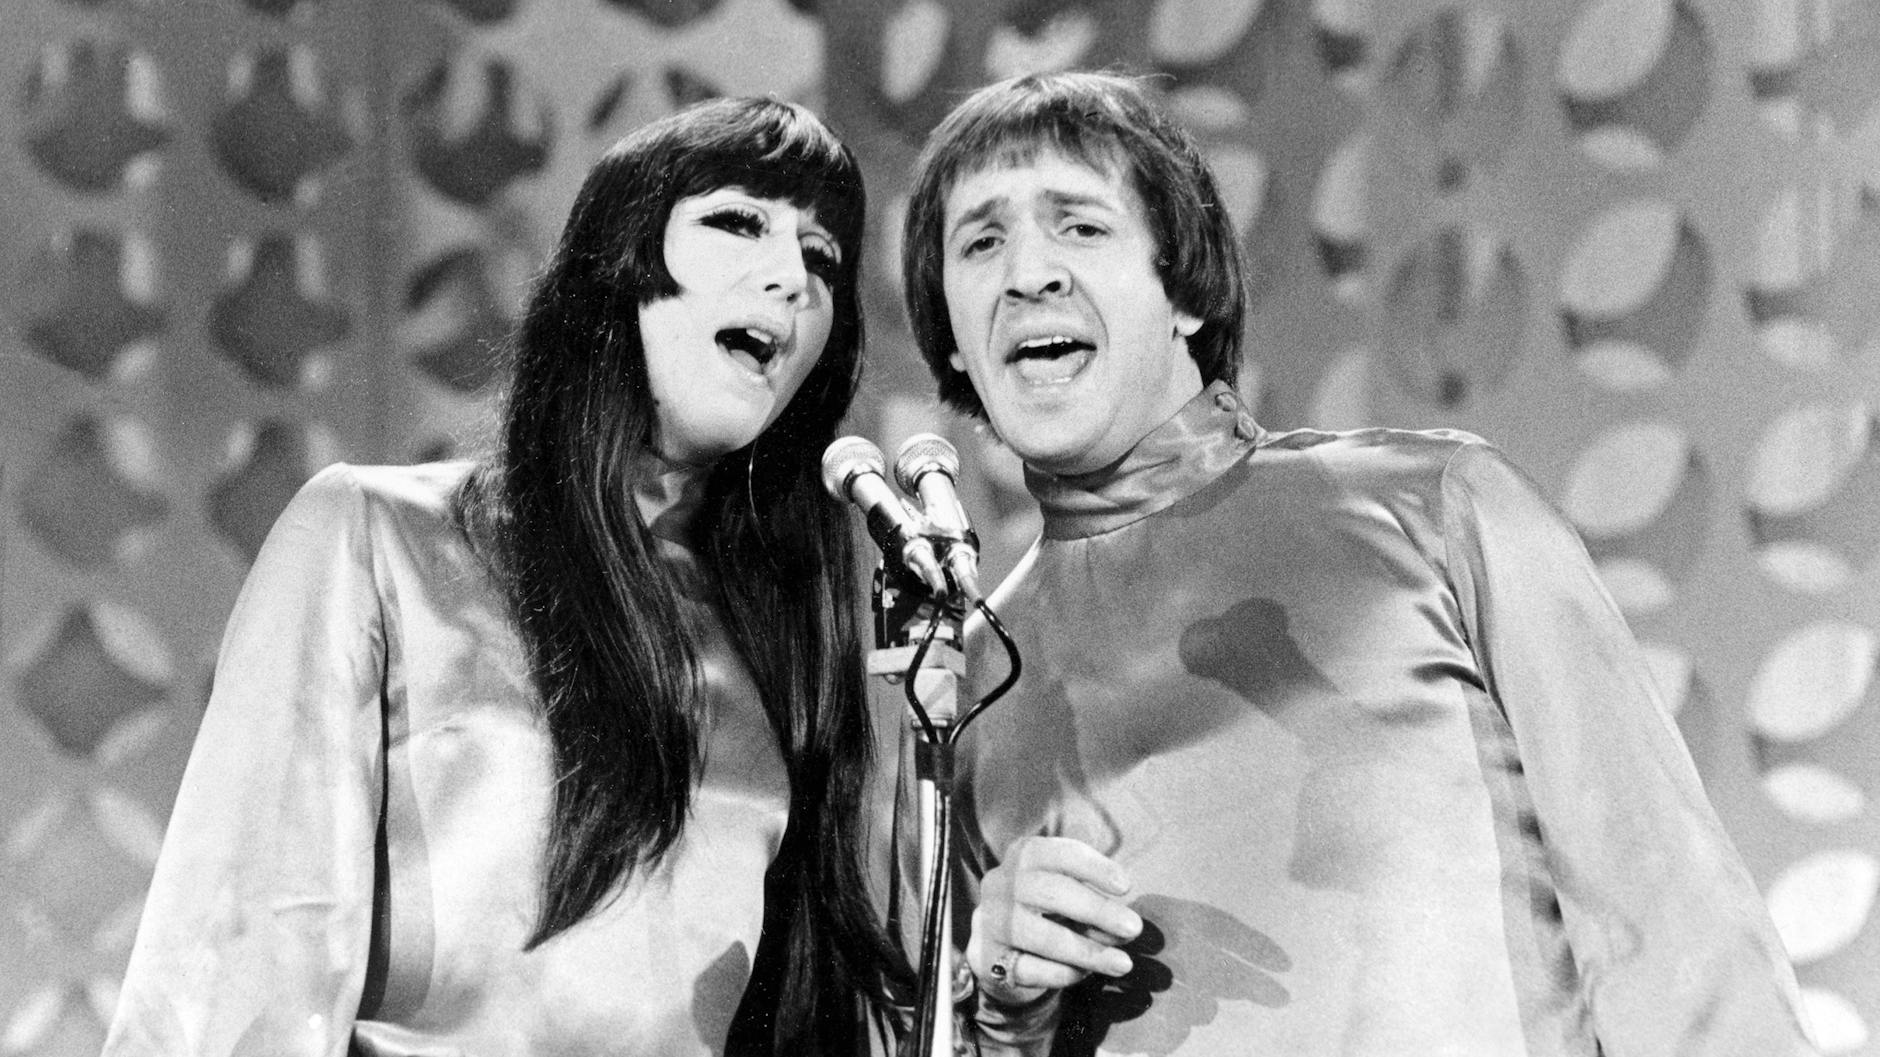 Cher heiratete 1964 <a href="https://de.wikipedia.org/wiki/Sonny_Bono">Sonny Bono</a>, den sie zwei Jahre zuvor kennengelernt hatte. 1974 reichte die Sängerin die Scheidung ein